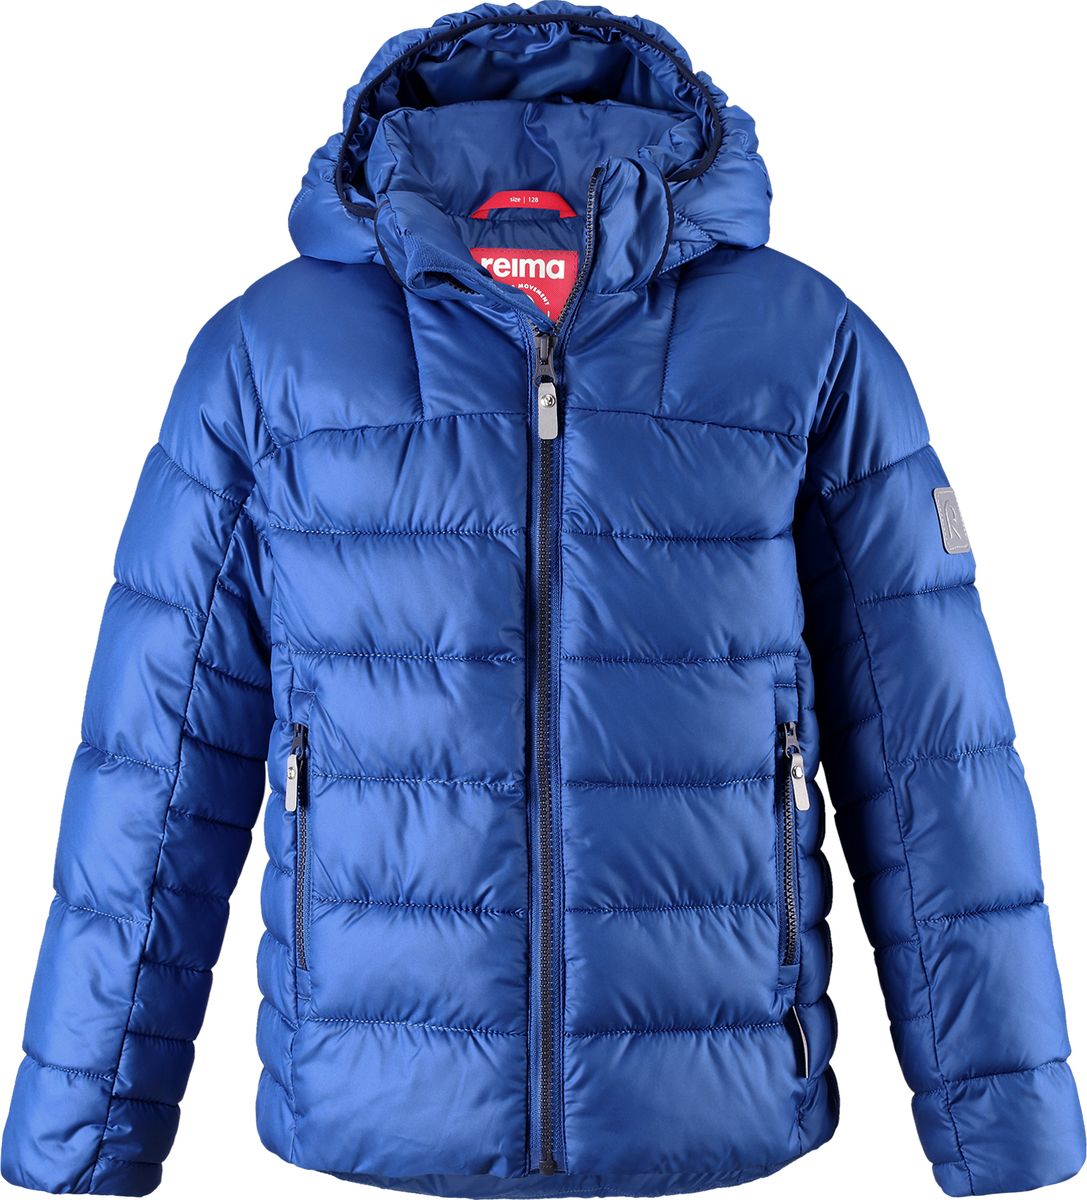 Куртка для мальчика Reima Petteri, цвет: синий. 5313436680. Размер 164